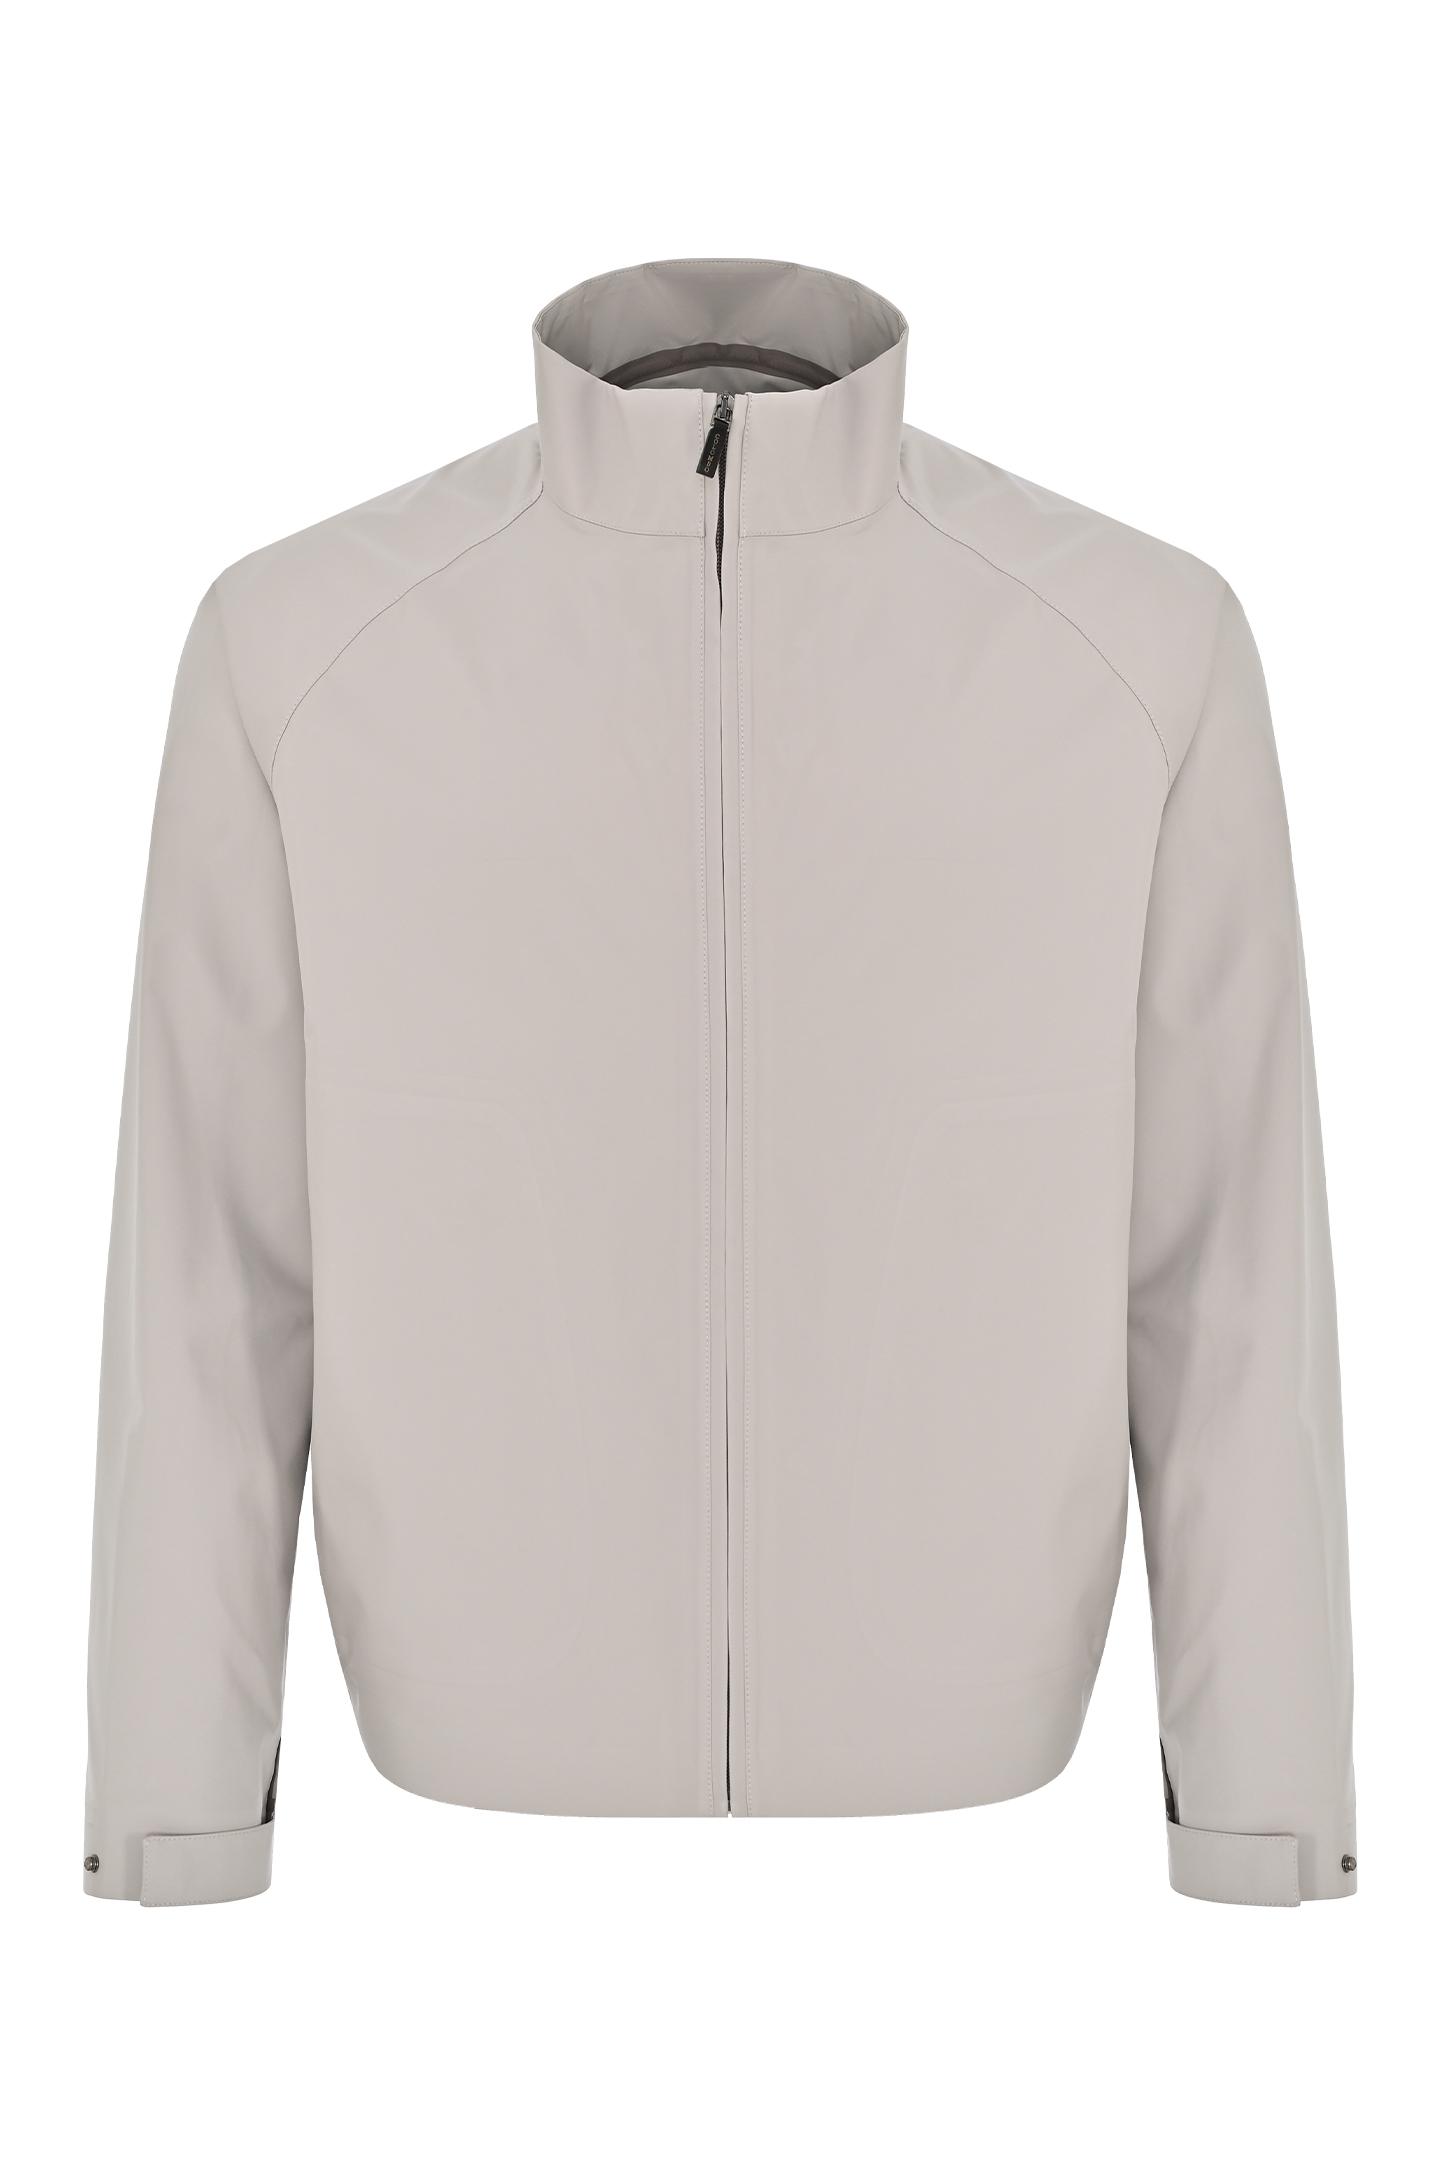 Куртка из полиэстера COLOMBO GB00203/-/A00921/80005, цвет: Светло-бежевый, Мужской